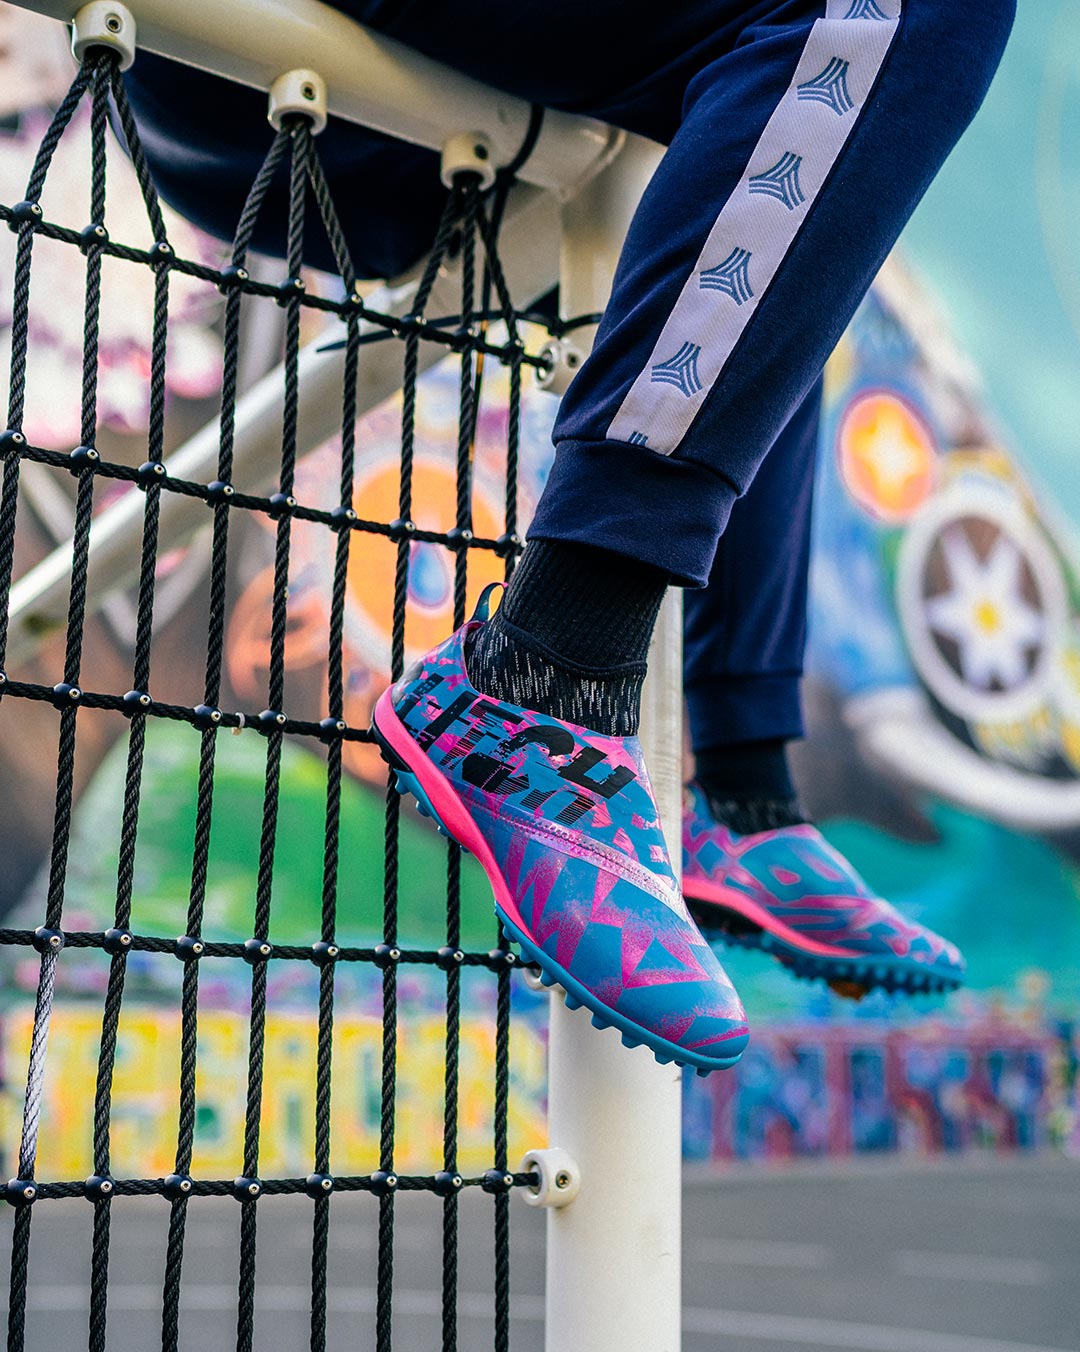 plátano Contribuyente Estación de policía First-Ever Adidas Glitch Turf Boot Skins Released - Footy Headlines